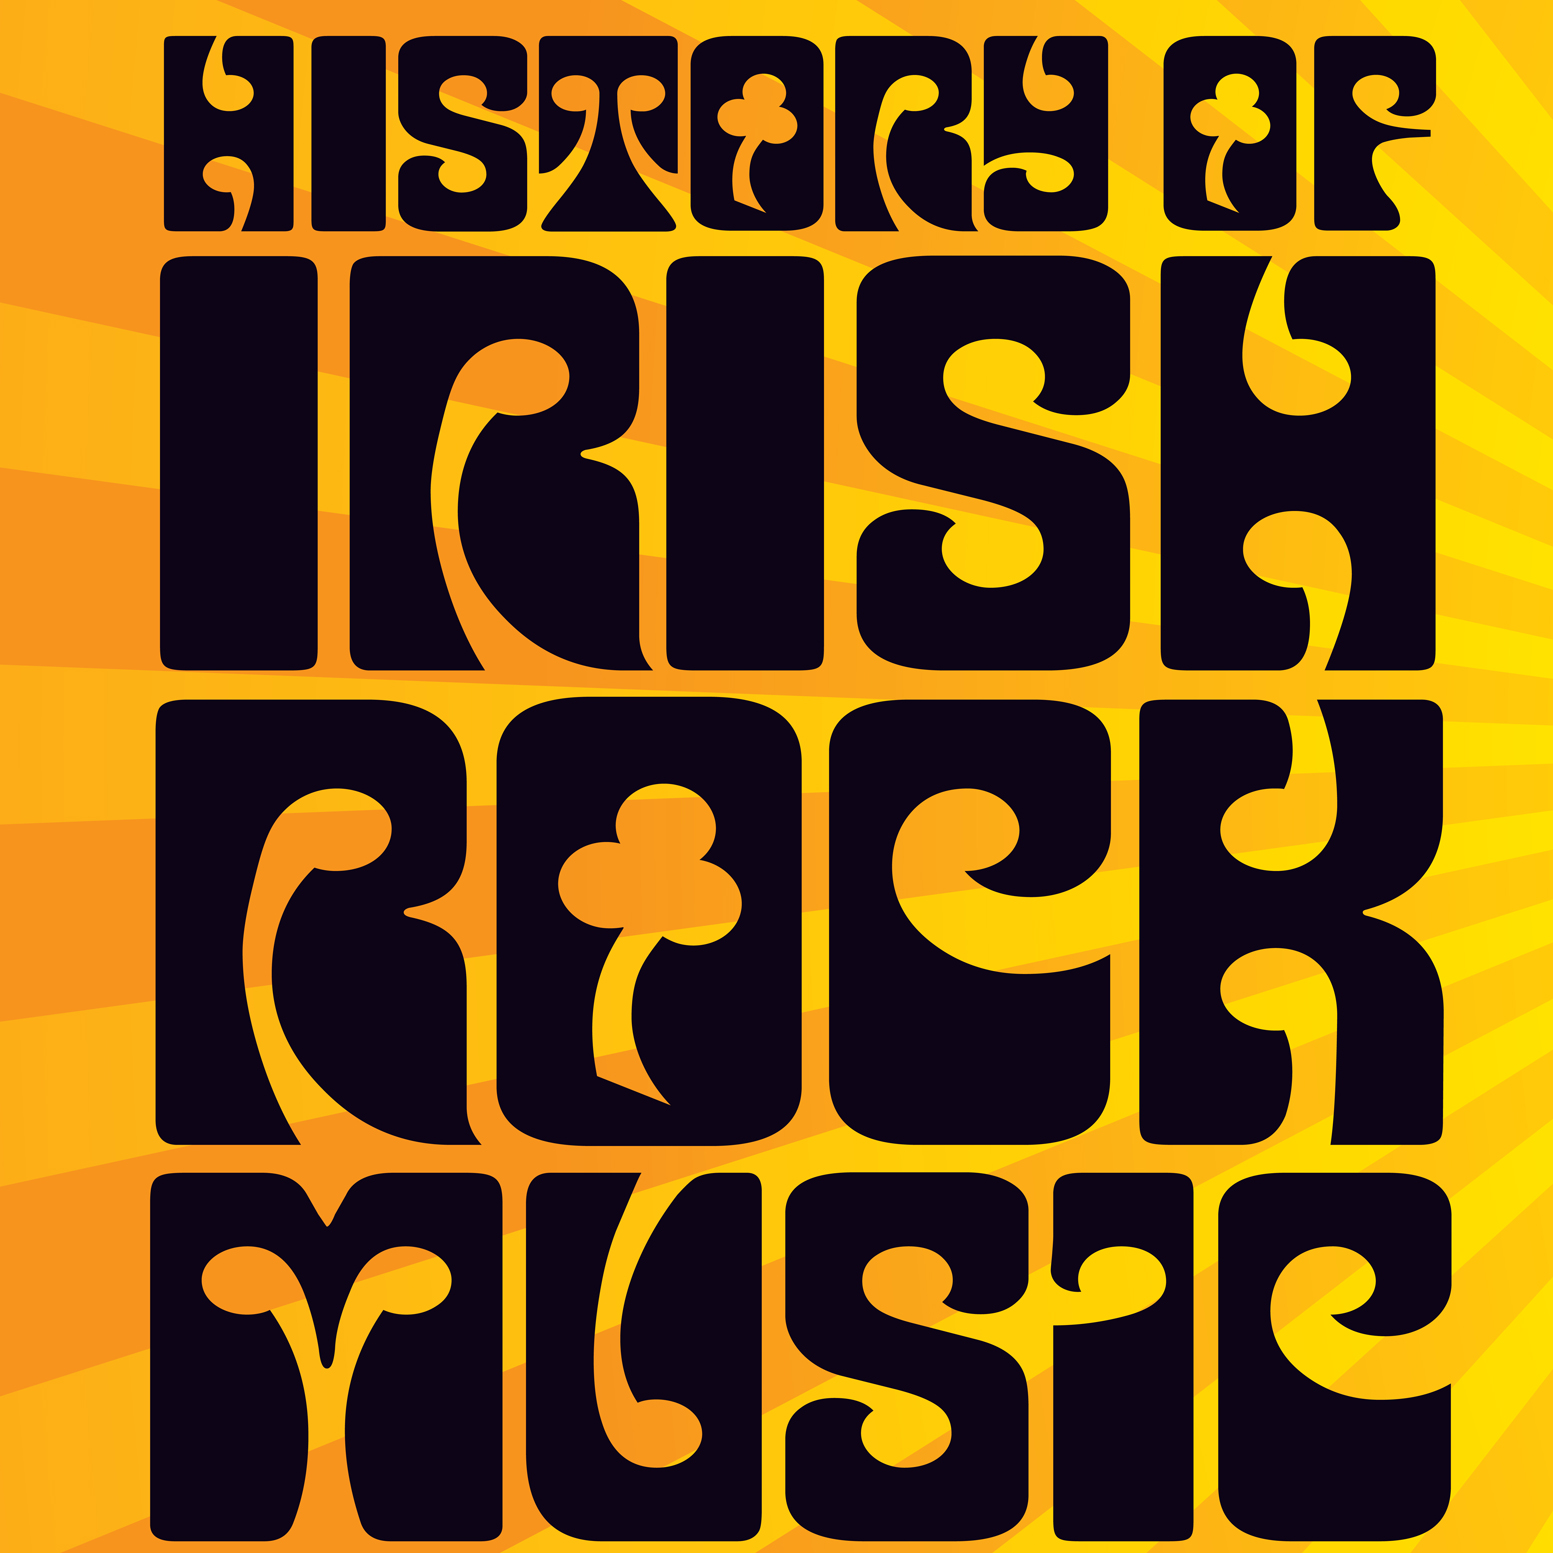 History of Irish Rock Music Exhibit